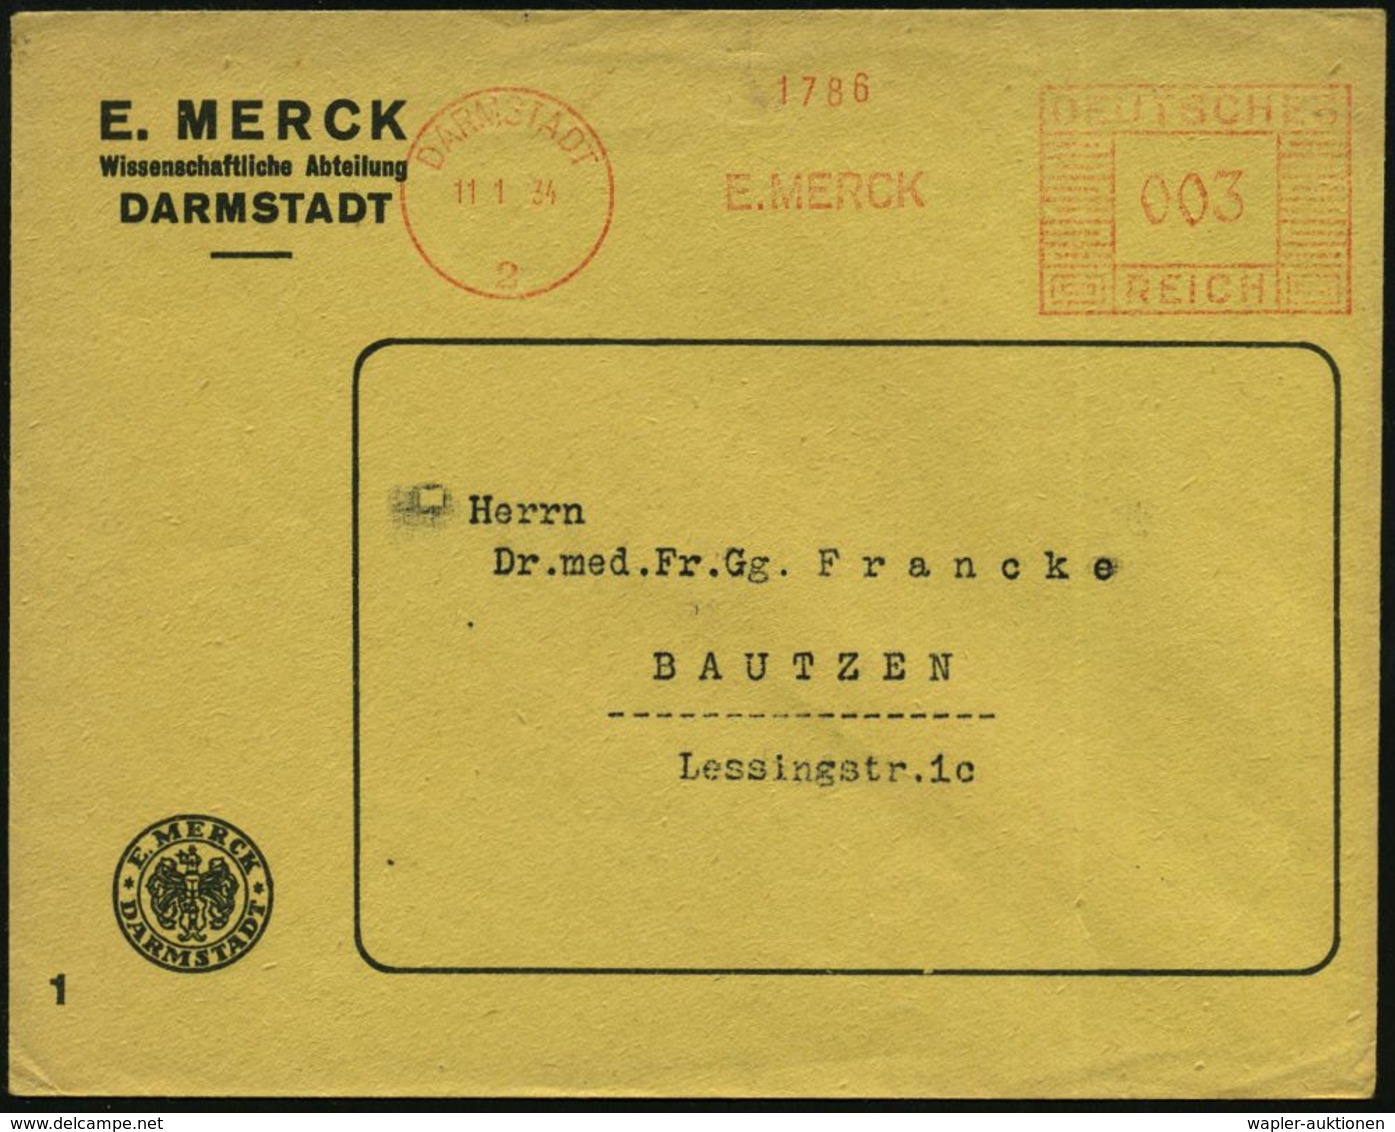 CHEMIE / PRODUKTE / CHEMISCHE INDUSTRIE : DARMSTADT/ 2/ E.MERCK 1934 (11.1.) AFS Auf Firmen-Bf.: E. MERCK Mit Firmen-Log - Chimie